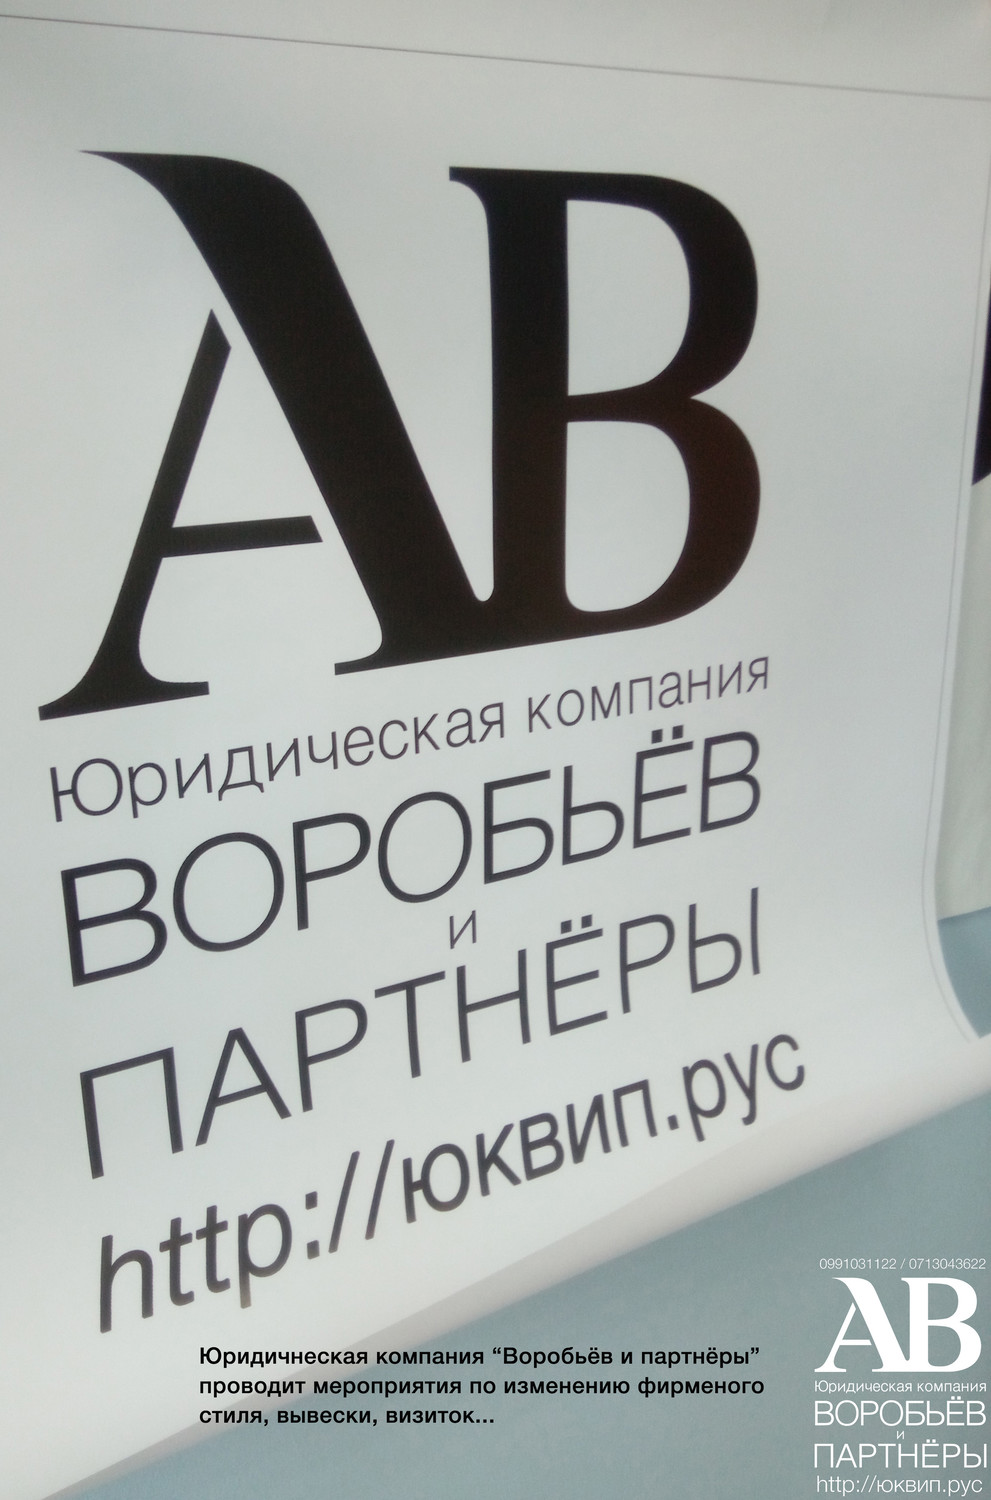 Смена визиток и фирменного стиля адвокатов и юристов ЮК Воробьёв и партнёры